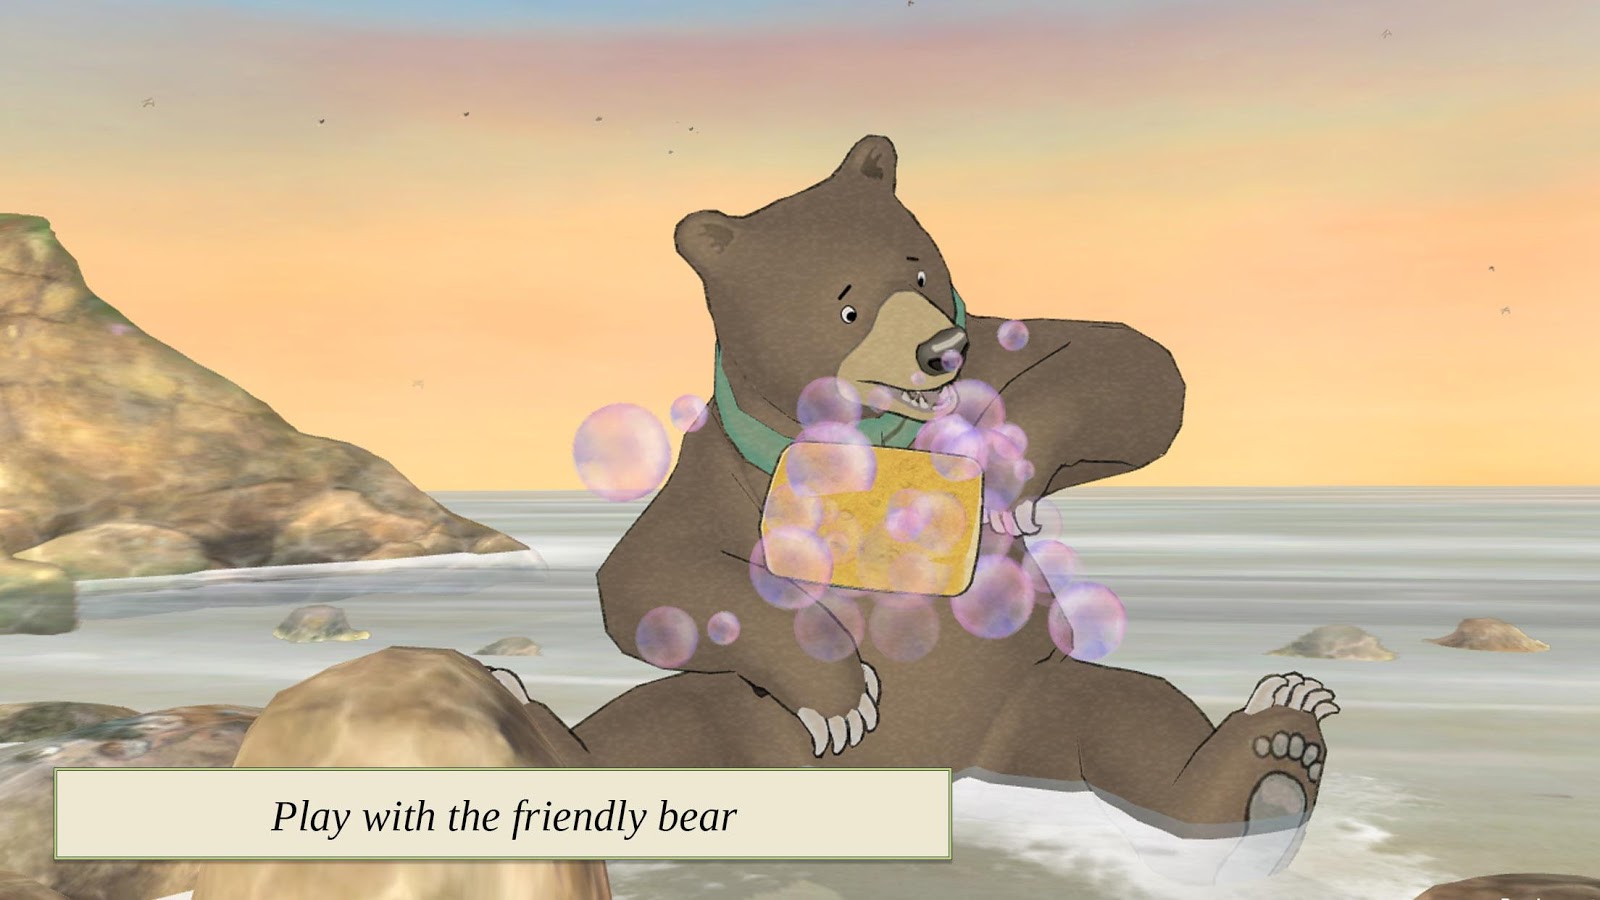 My friend bear. Дружелюбные мишки. Приветливый медведь. Инди КИД медведи. Два приветливых медведя.